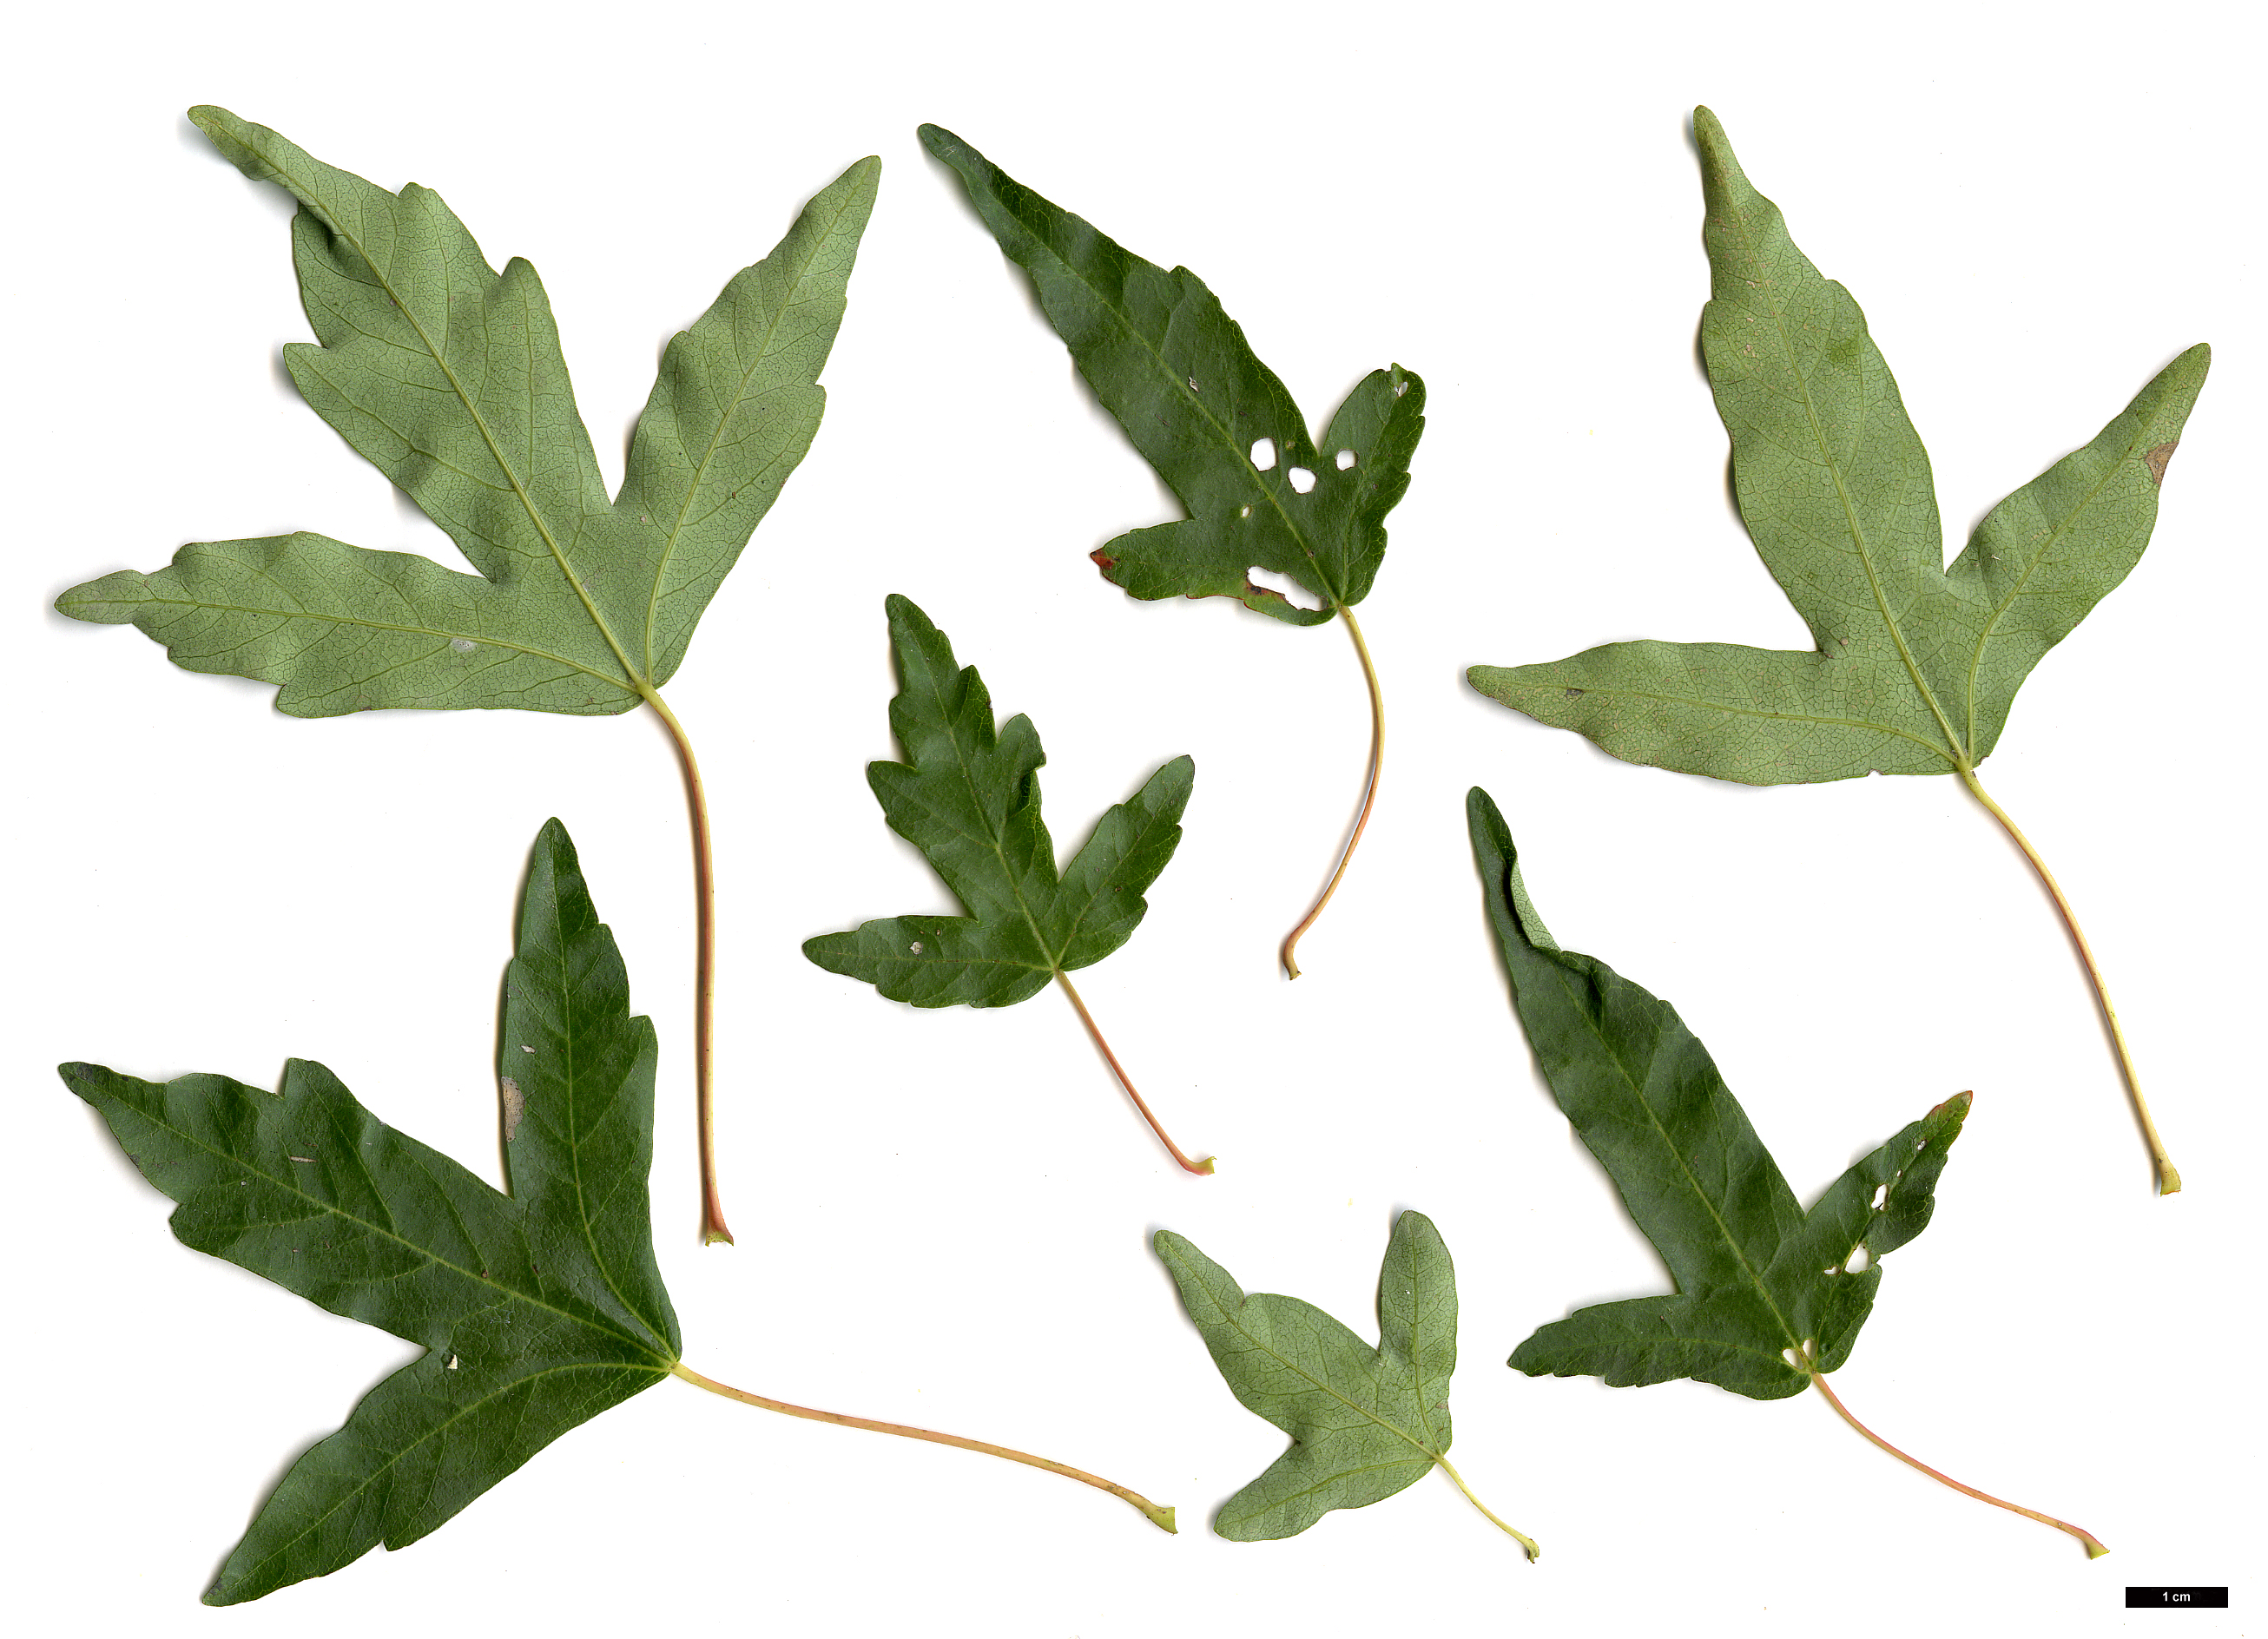 High resolution image: Family: Sapindaceae - Genus: Acer - Taxon: pilosum - SpeciesSub: var. stenolobum